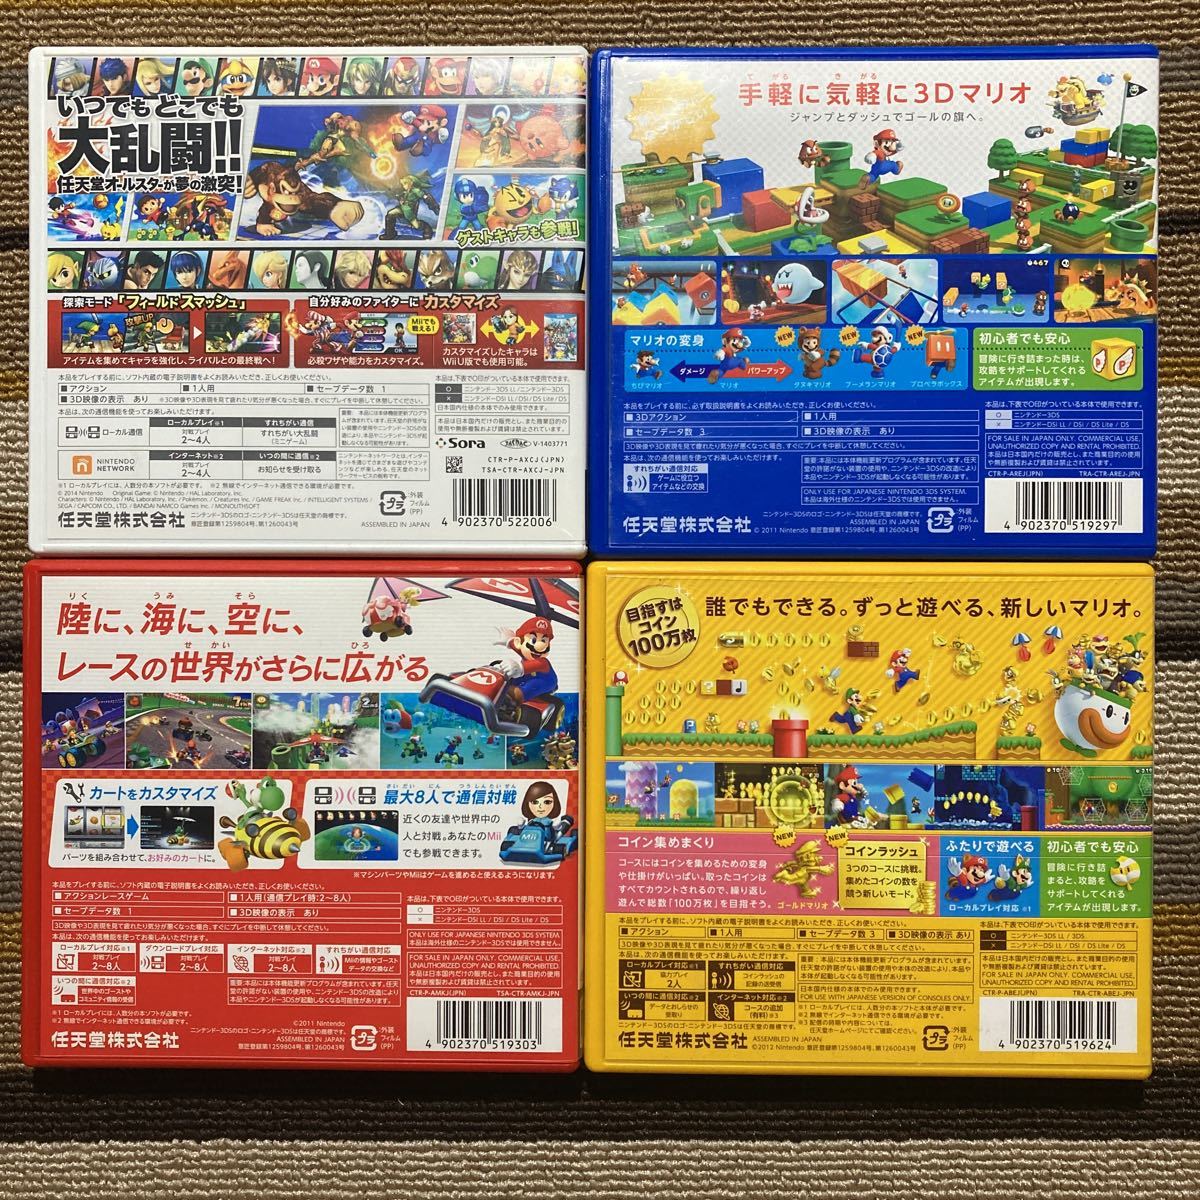 3DS 大乱闘スマッシュブラザーズ スーパーマリオ3Dランド ニュースーパーマリオブラザーズ2 マリオカート7 